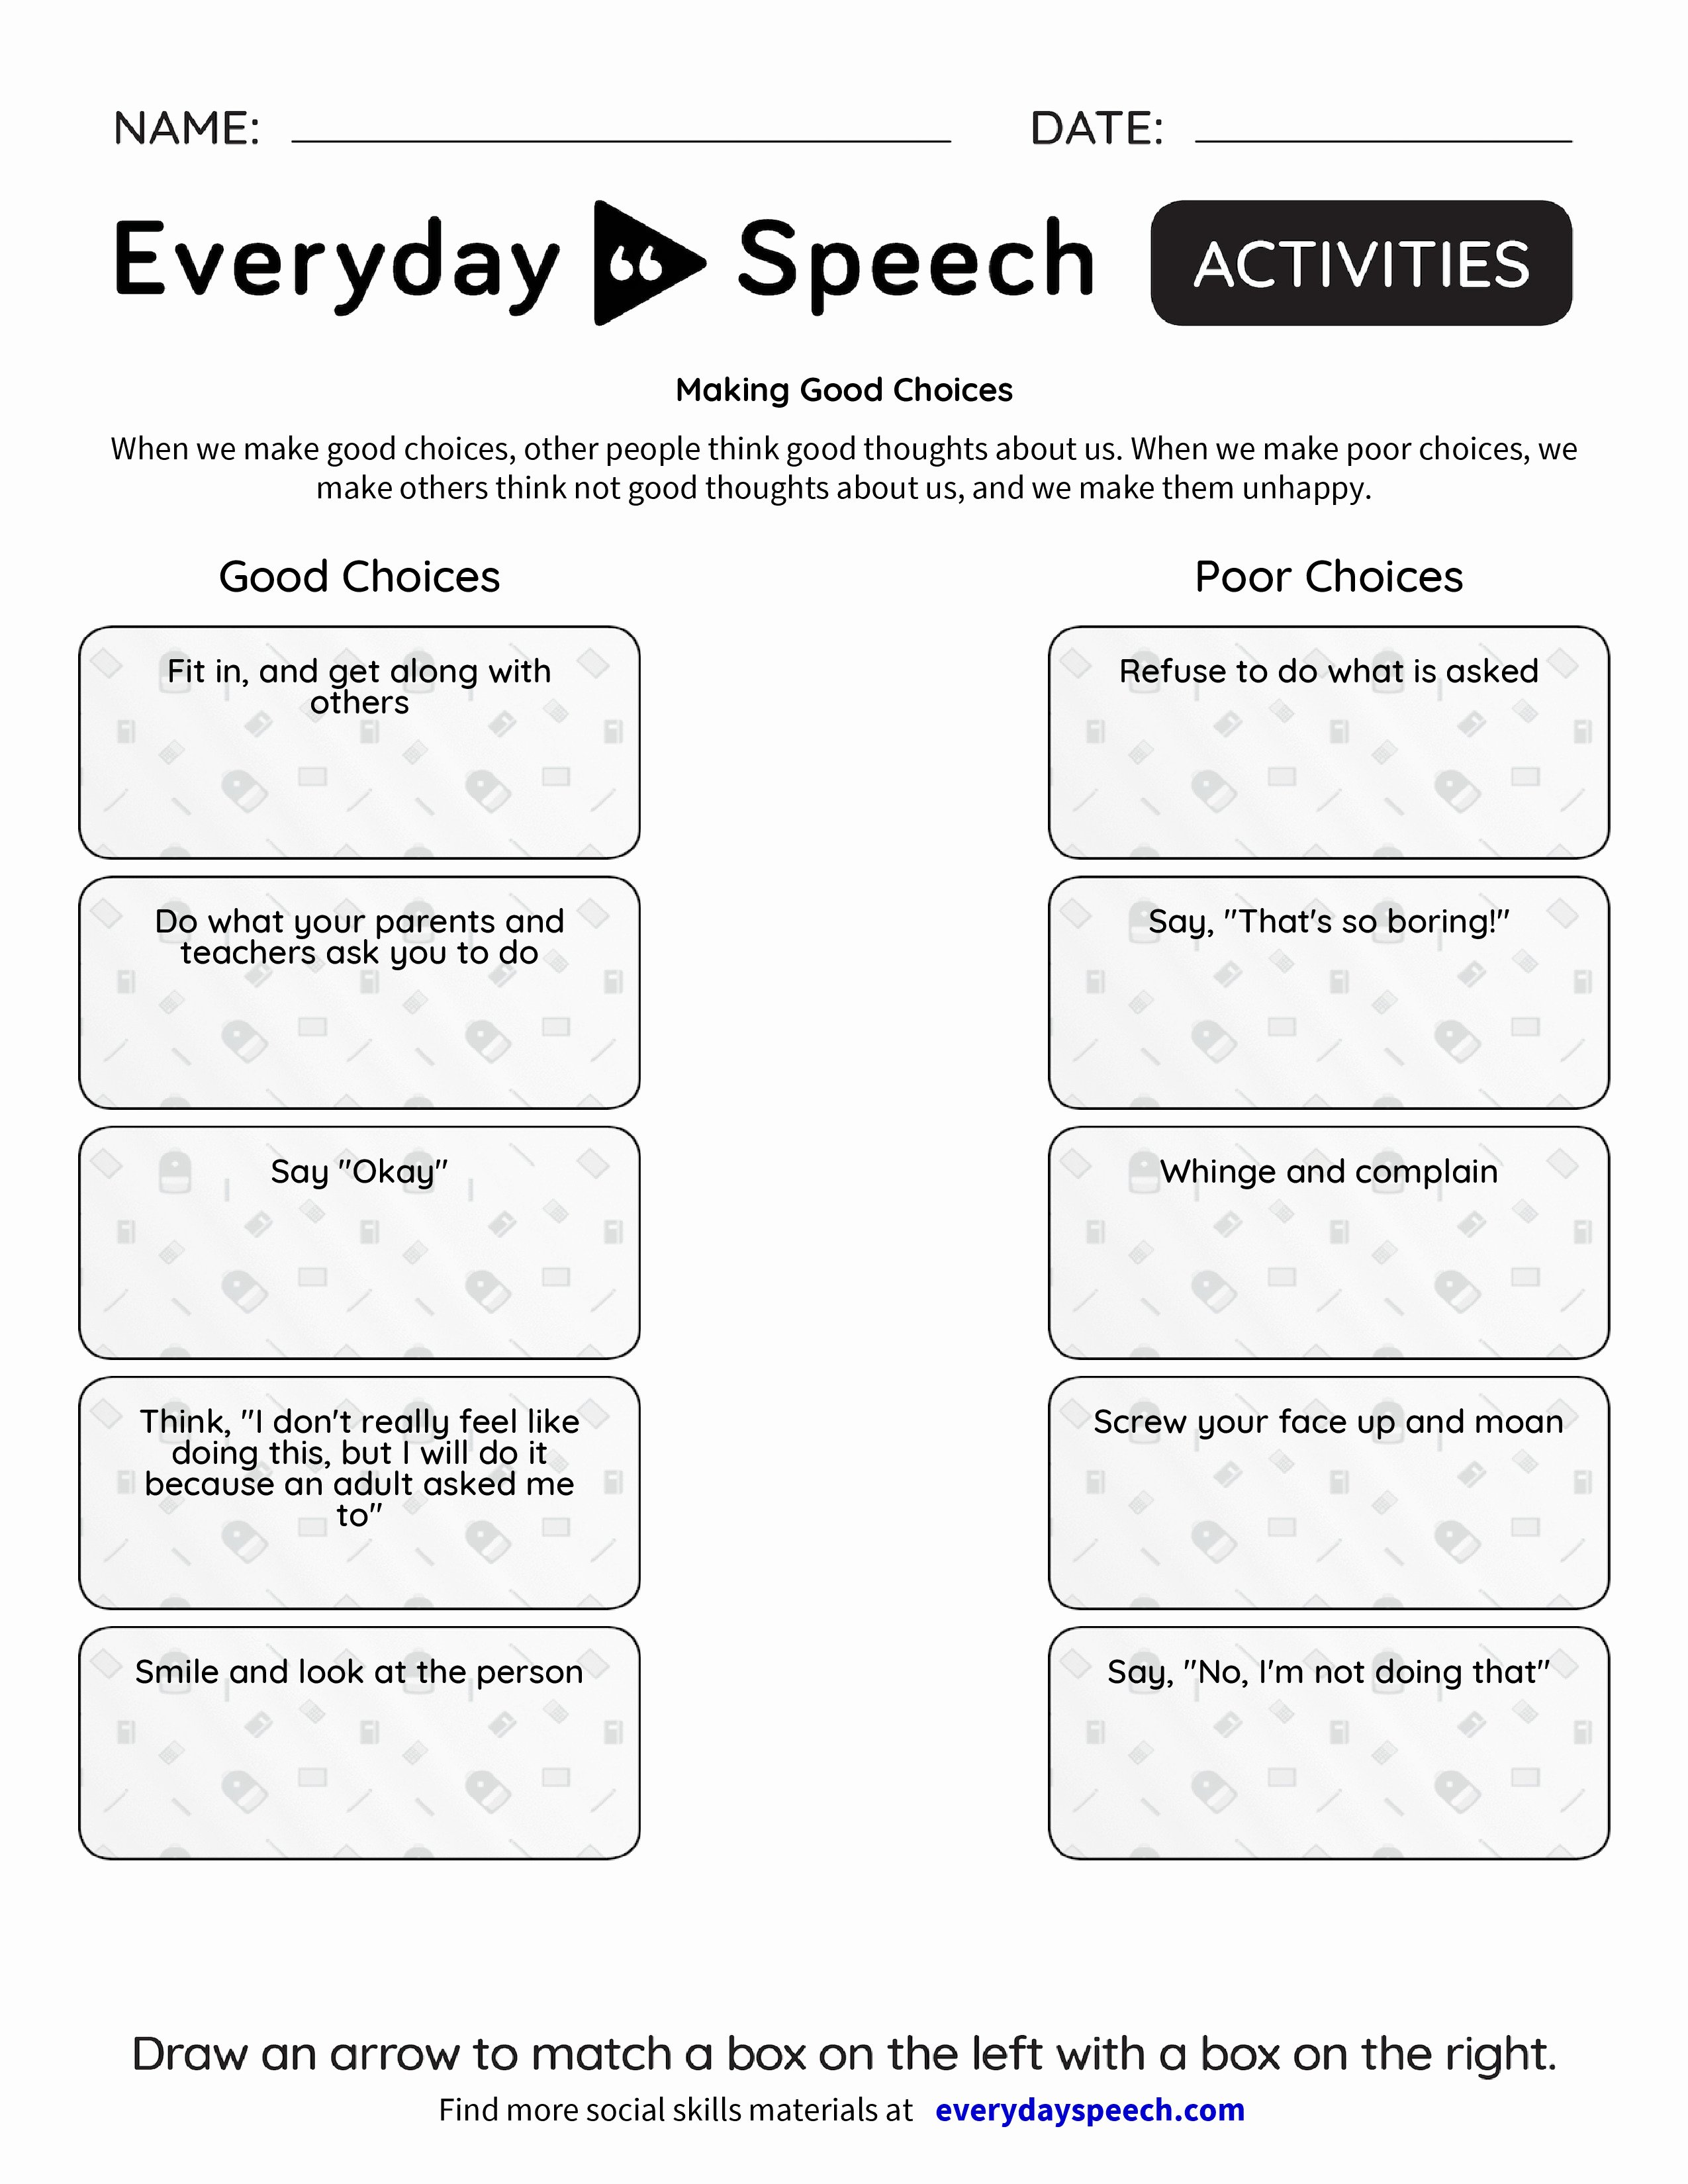 Making Good Choices Worksheet Elegant Making Good Choices Everyday Speech Everyday Speech